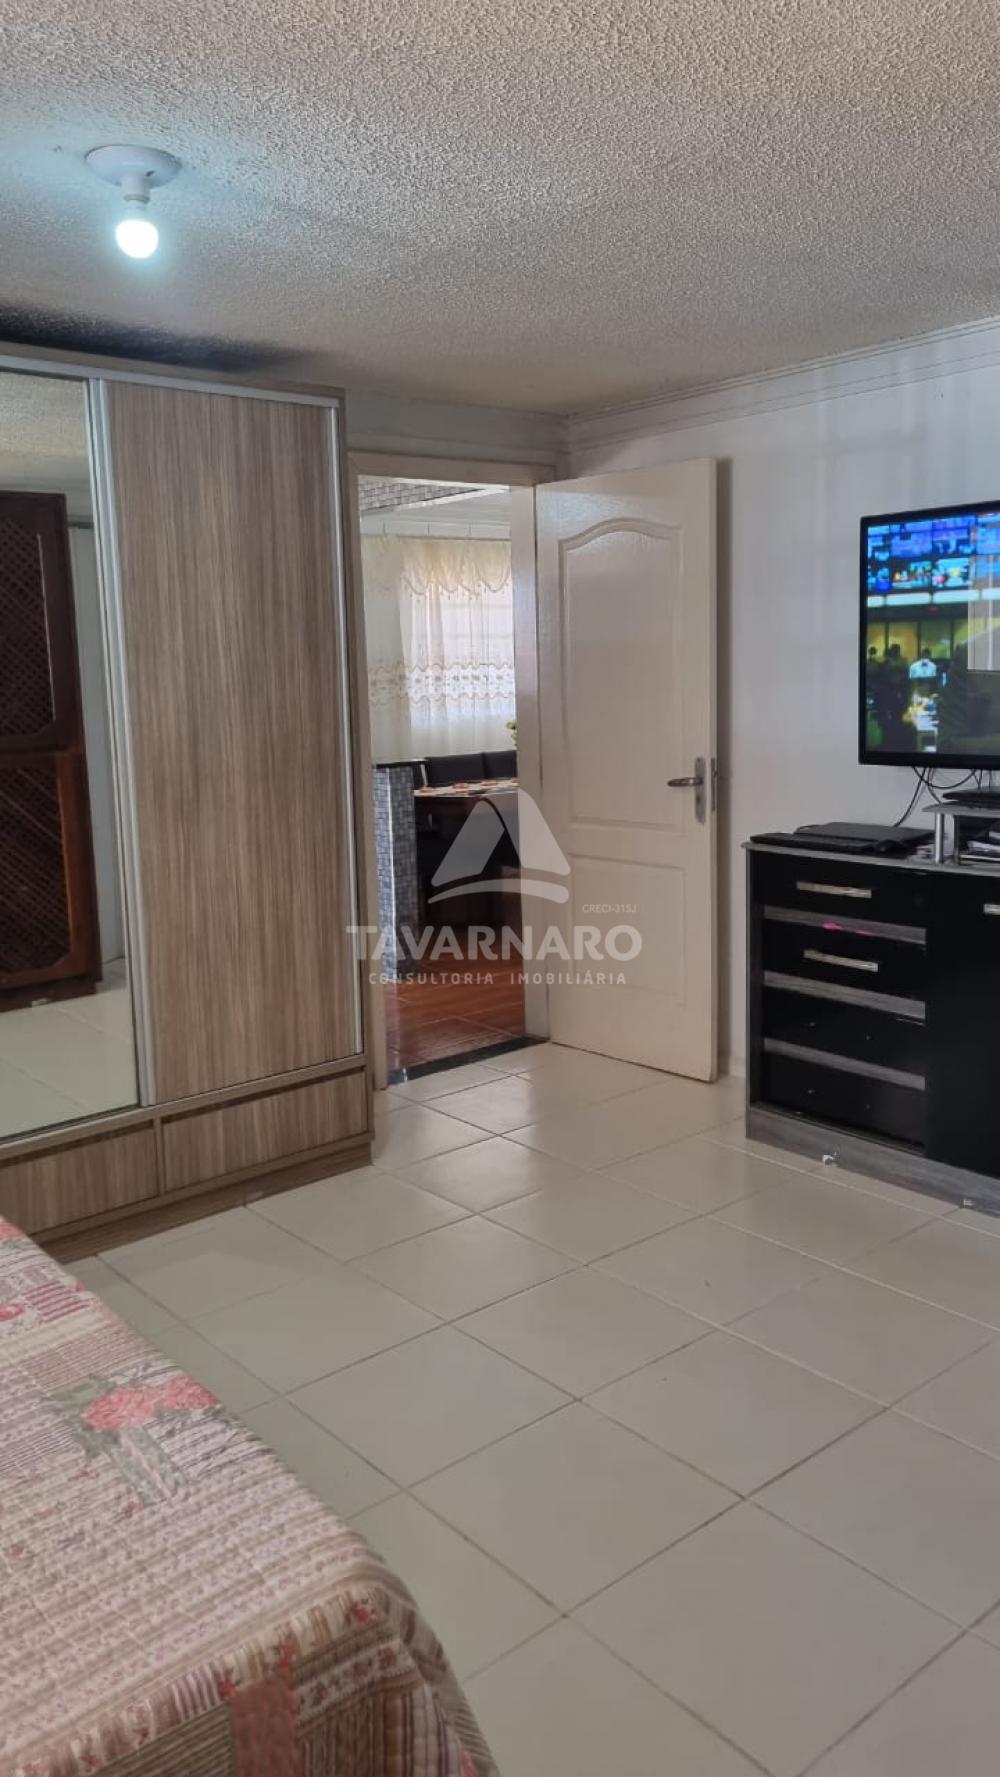 Comprar Casa / Padrão em Ponta Grossa R$ 380.000,00 - Foto 16